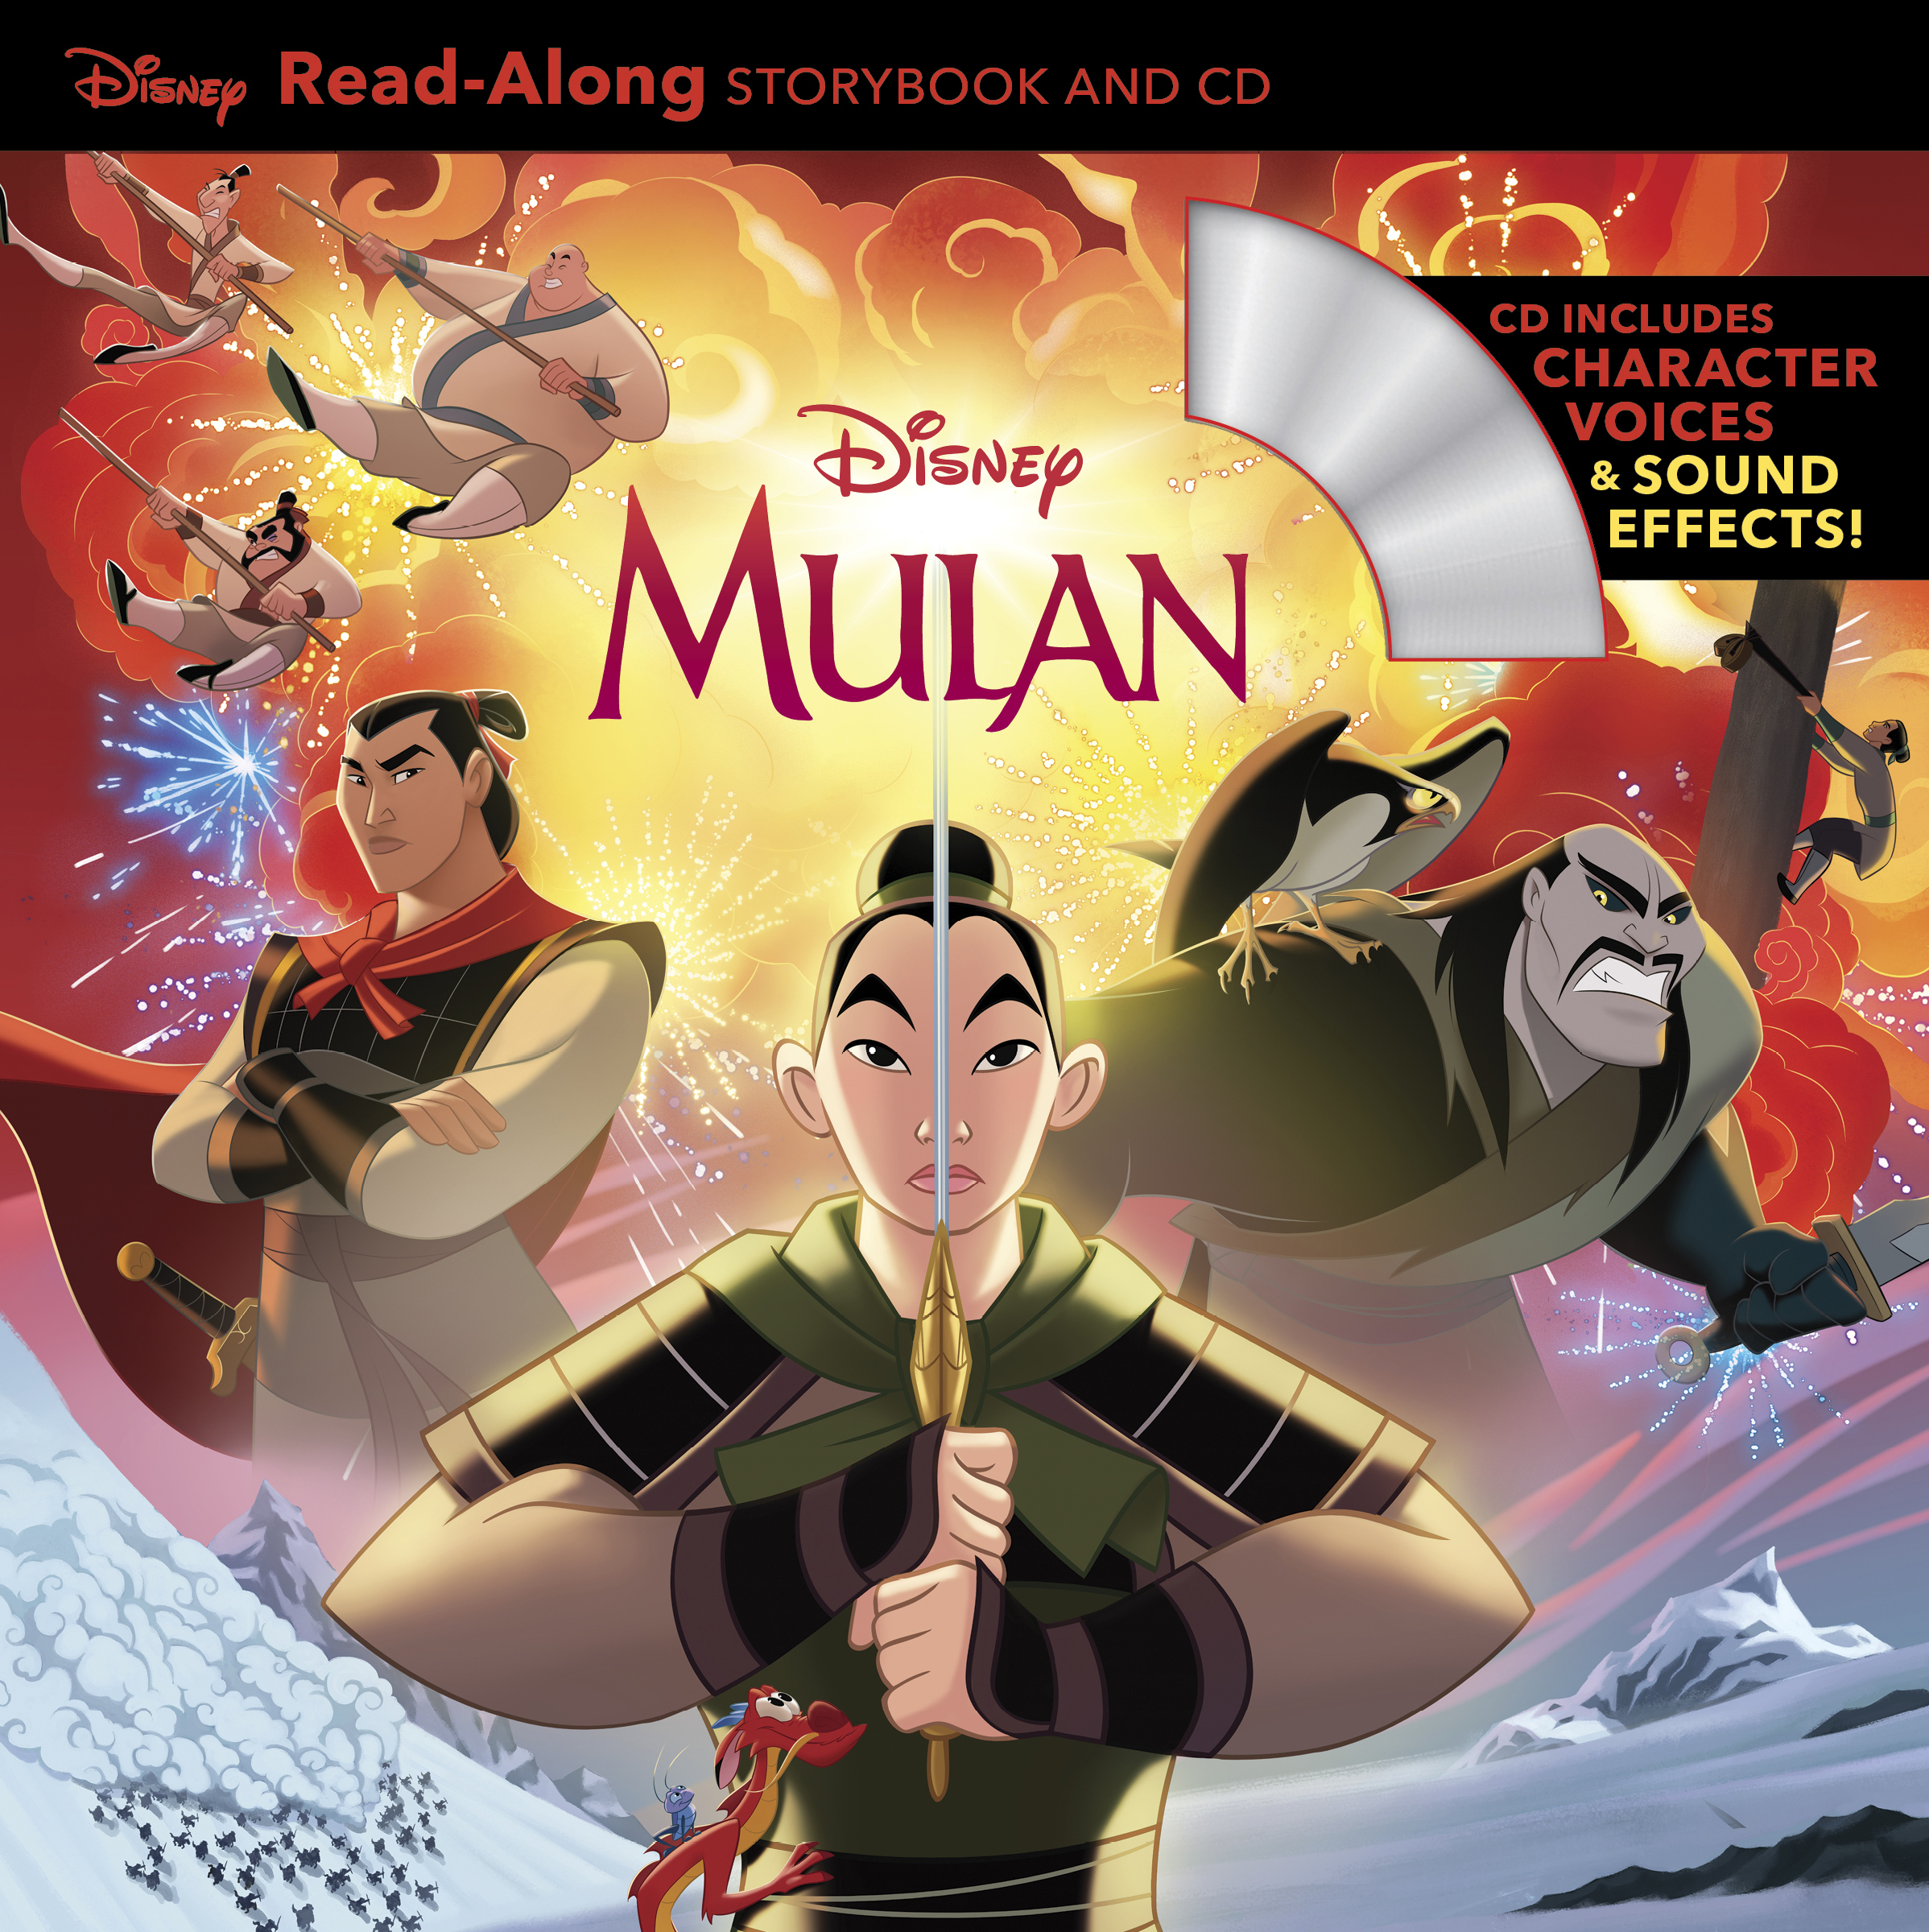 Mulan Read-Along Storybook and CD by Disney Book Group Disney Storybook Art  Team - Read-Along Storybook and CD - Disney, Mulan, Princess Books